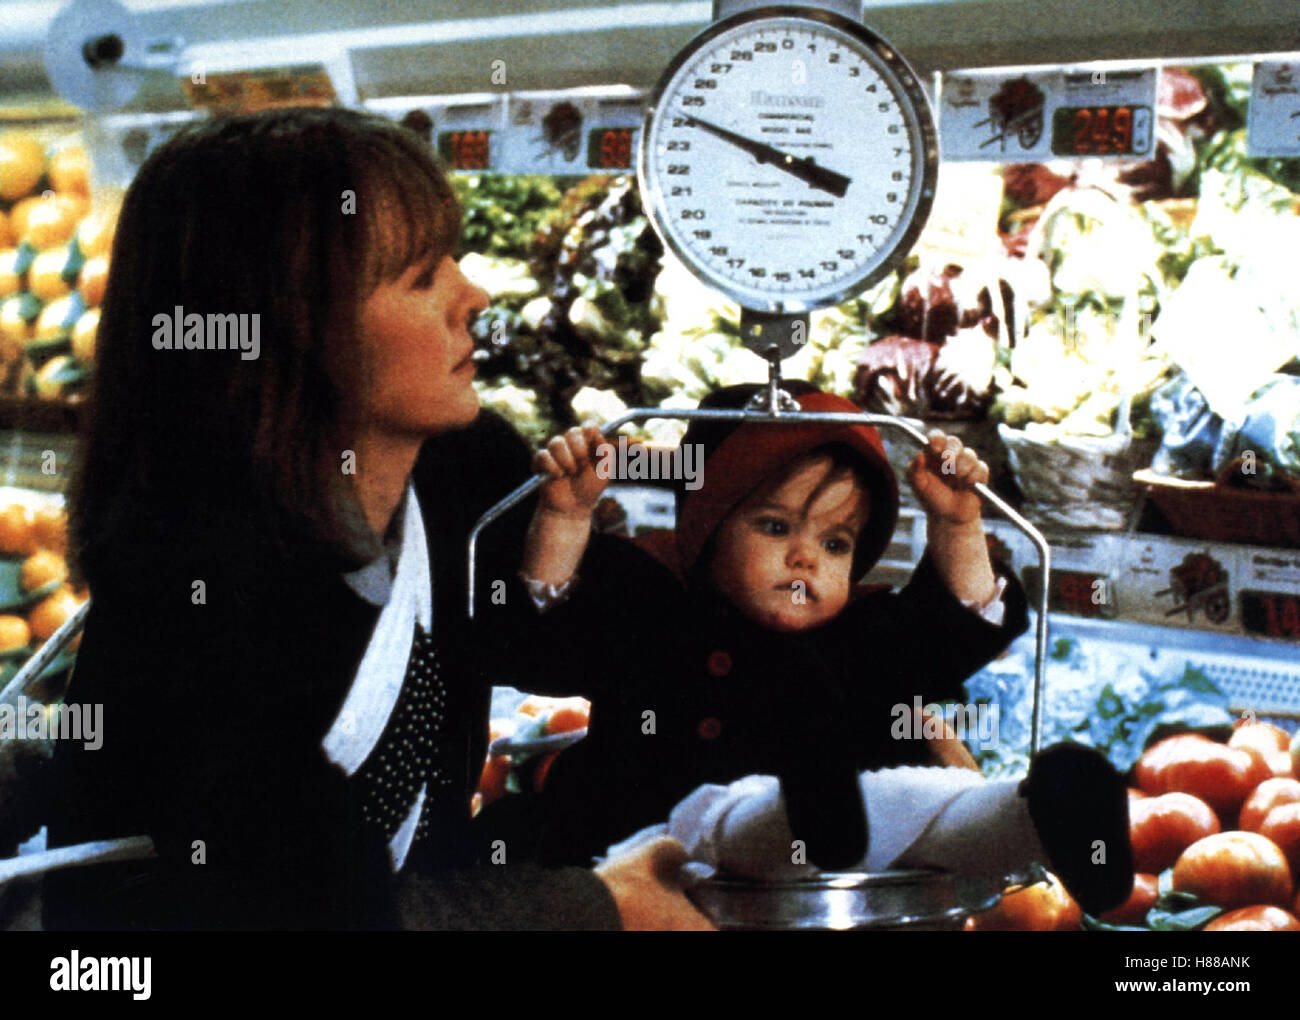 Baby Boom - Eine schöne Bescherung, (BABY BOOM) USA 1987, Regie: Charles Shyer, DIANE KEATON, MICHELLE KENNEDY, Stichwort: Mutter, Kind, Waage, Einkaufen Stock Photo